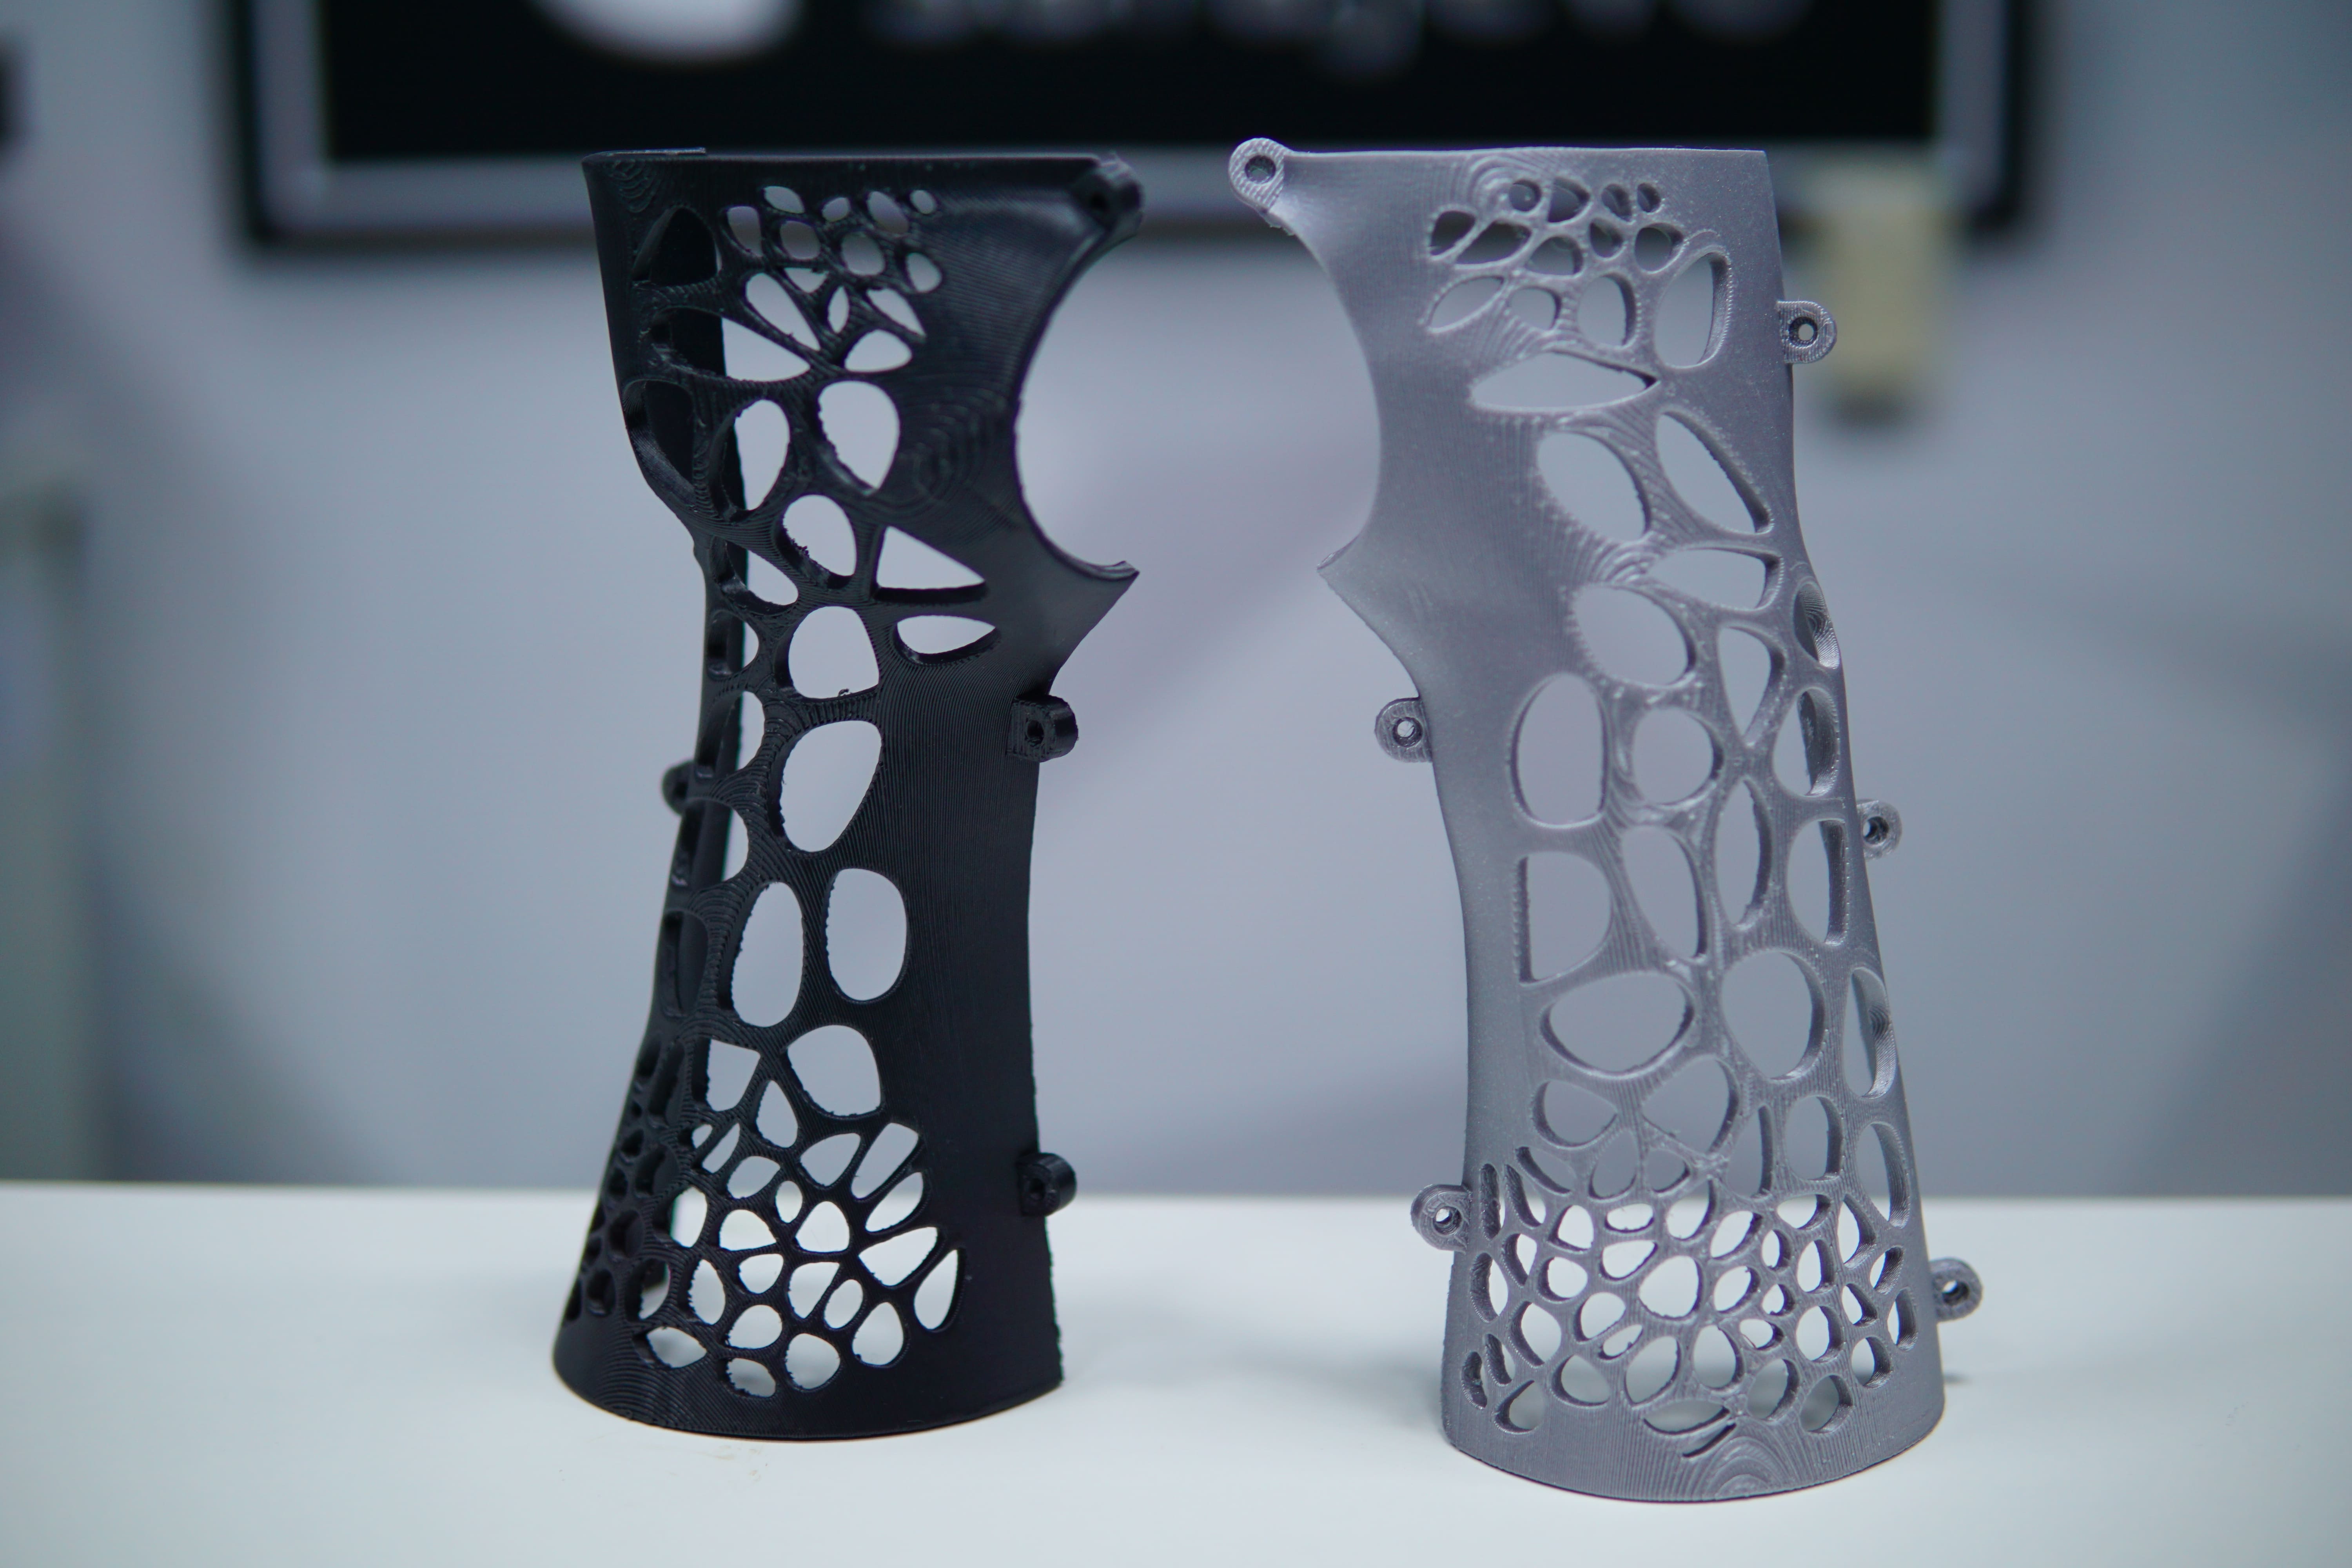 3D print - mjerenje i 3D skeniranje ruke, te izrada prototipa ortoze